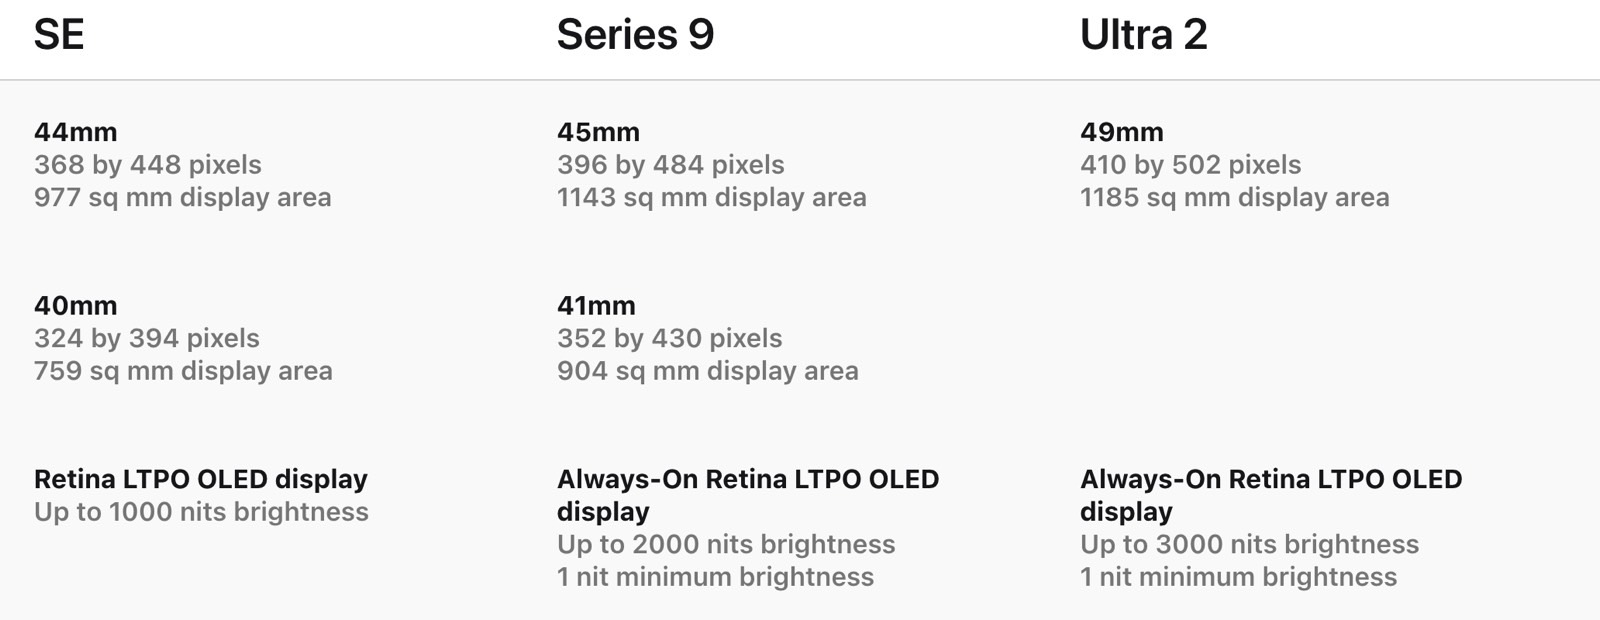 Apple Watch screen specs: SE 2 vs. Series 9 vs. Ultra 2.